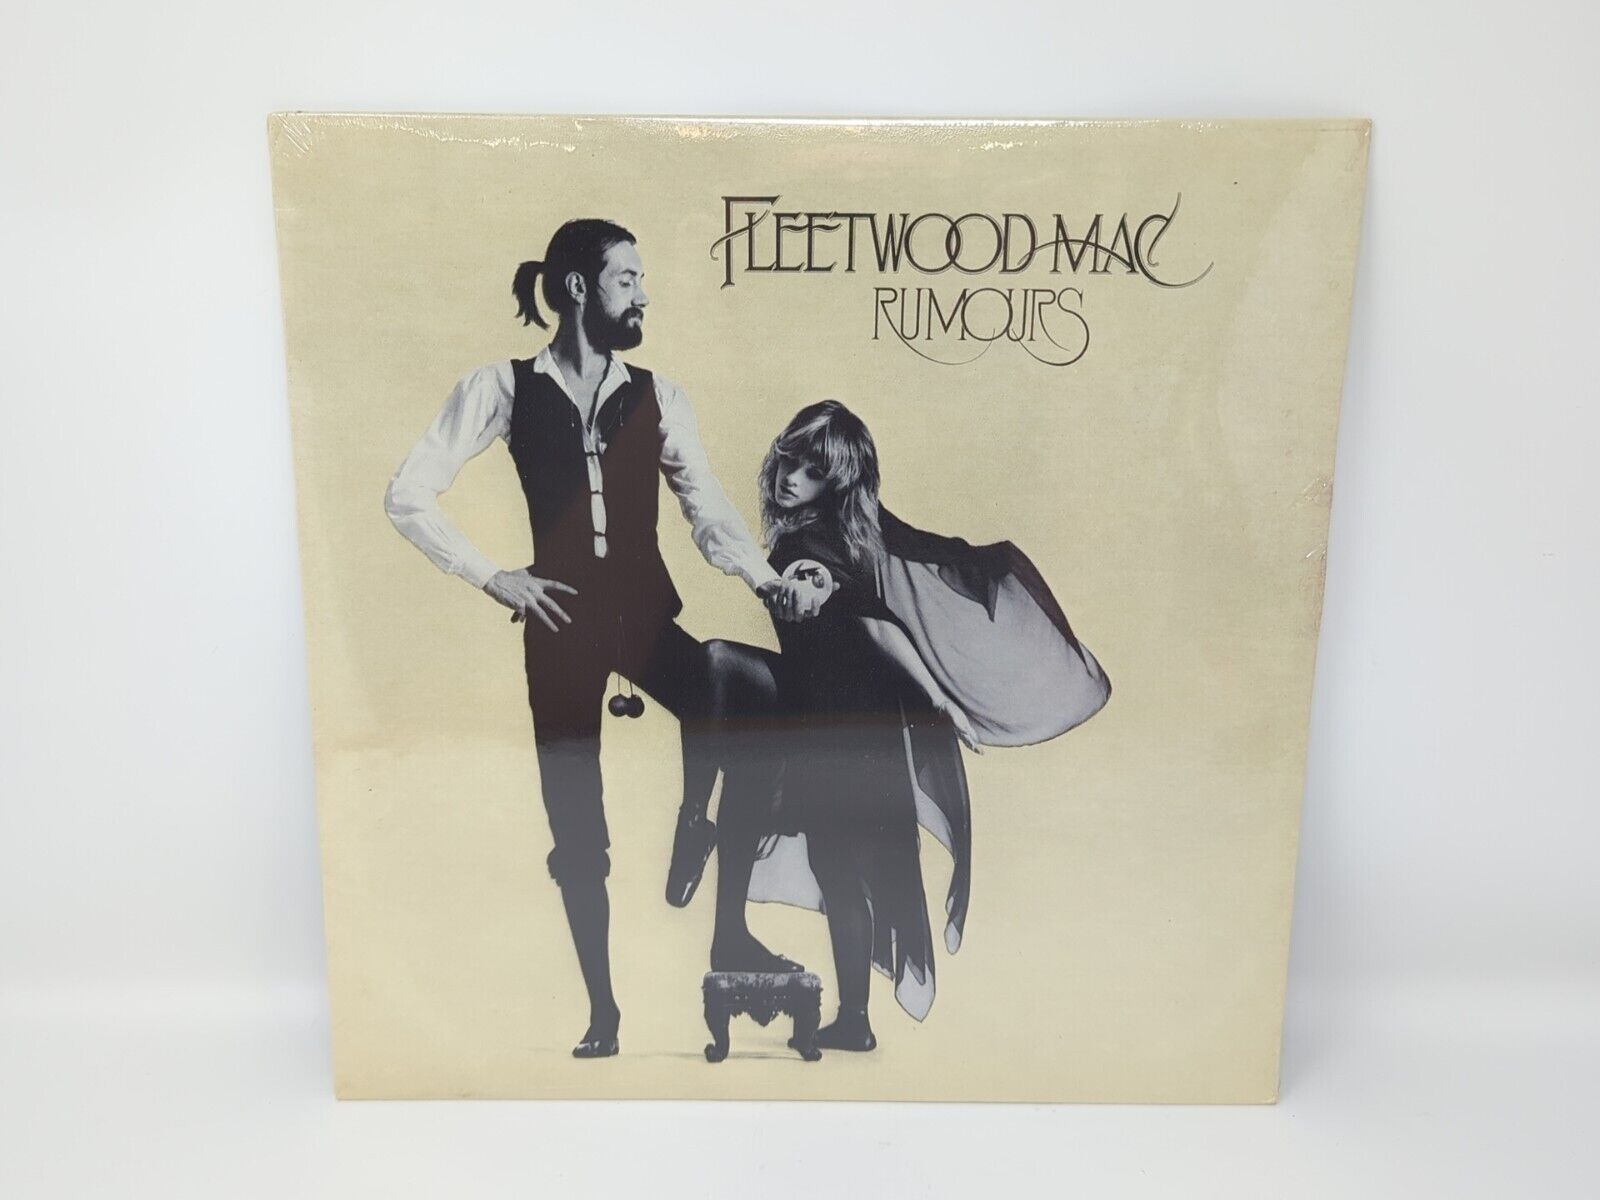 SEALED Fleetwood Mac Rumours Original 1st Press 1977 LP Warner Bros. BSK 3010